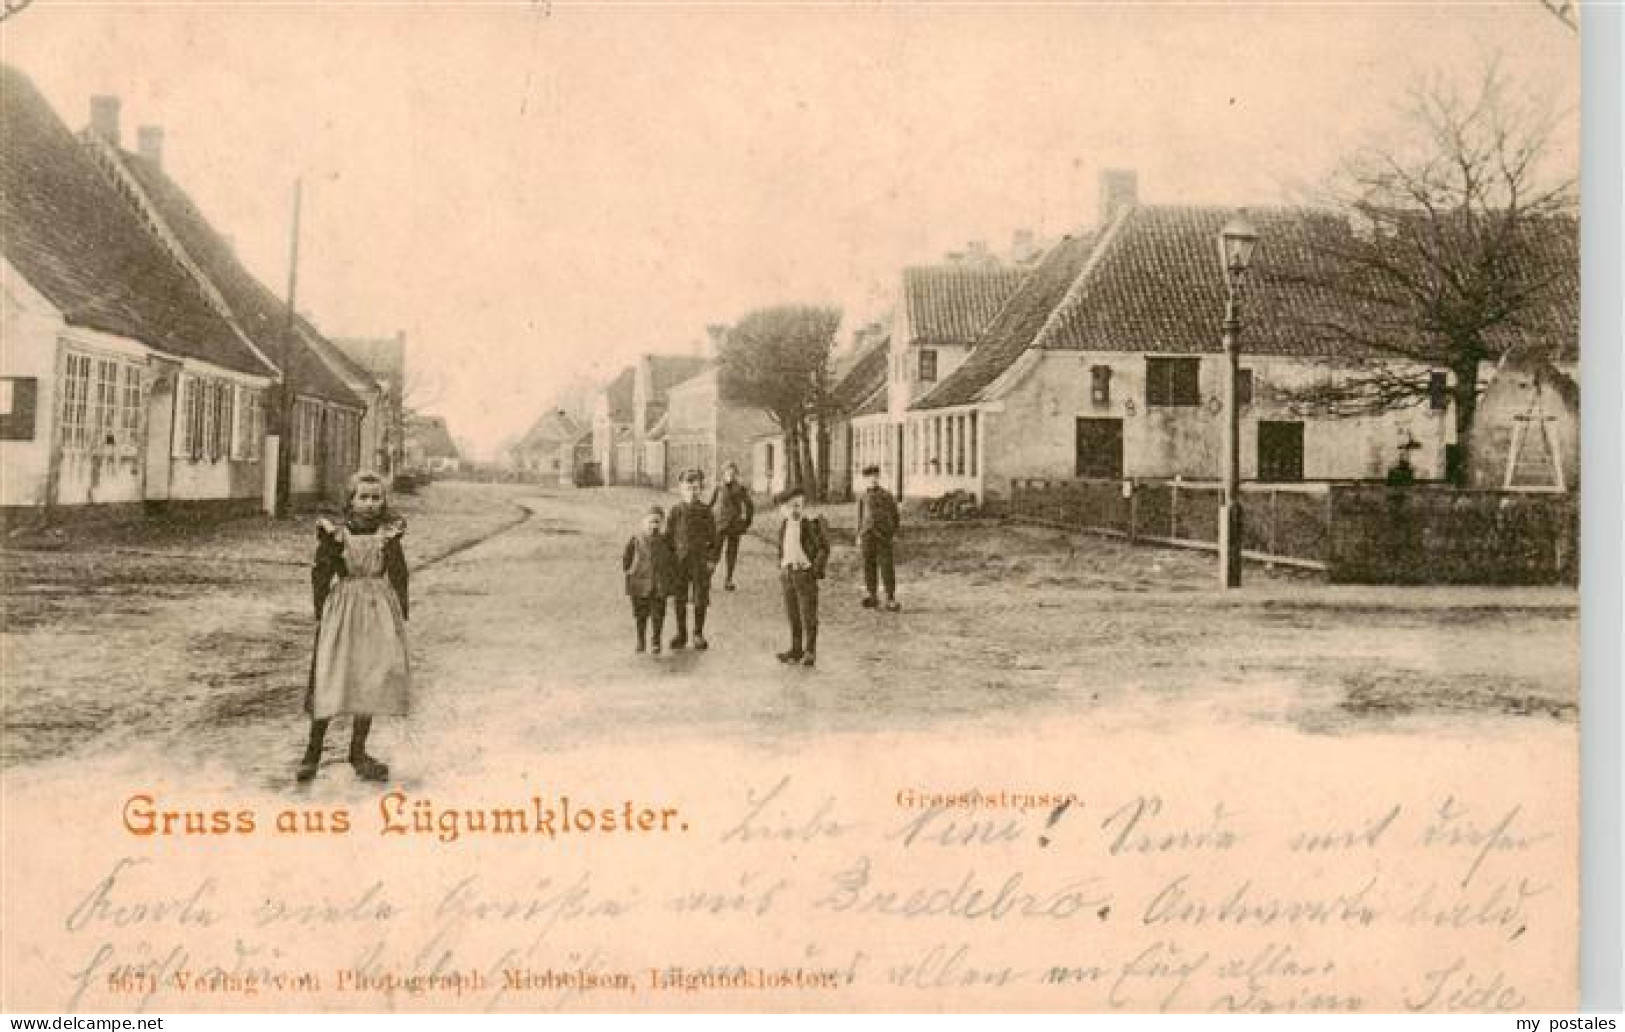 73939394 Luegumkloster_DK Grossestrasse - Denmark